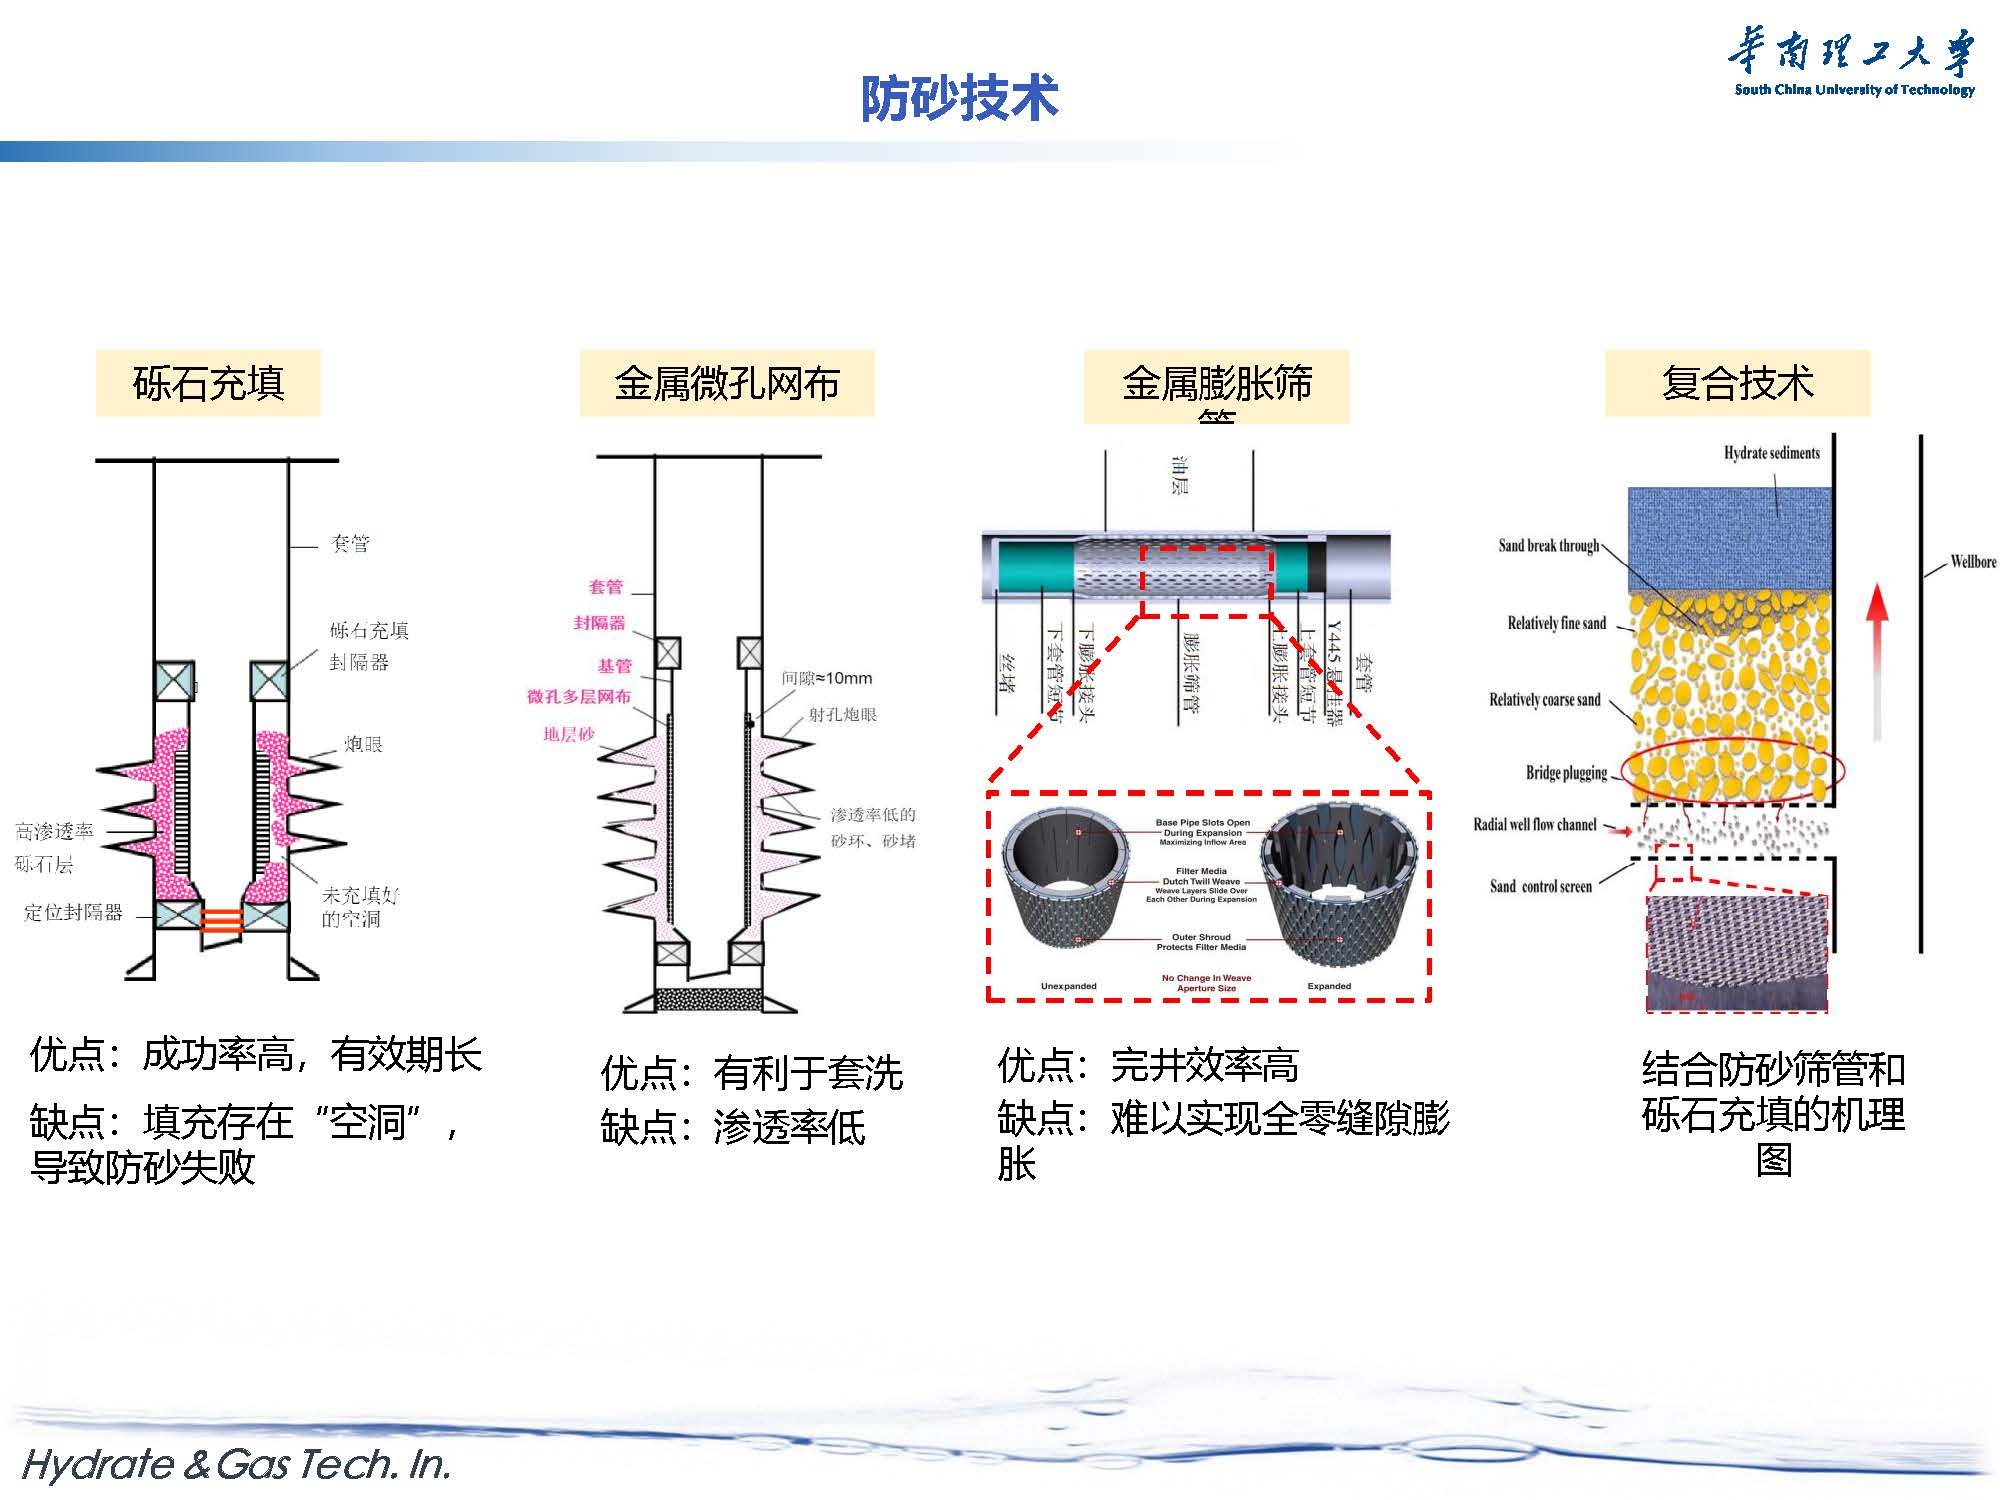 天然气水合物开采与新材料探索-forGJX_页面_22.jpg